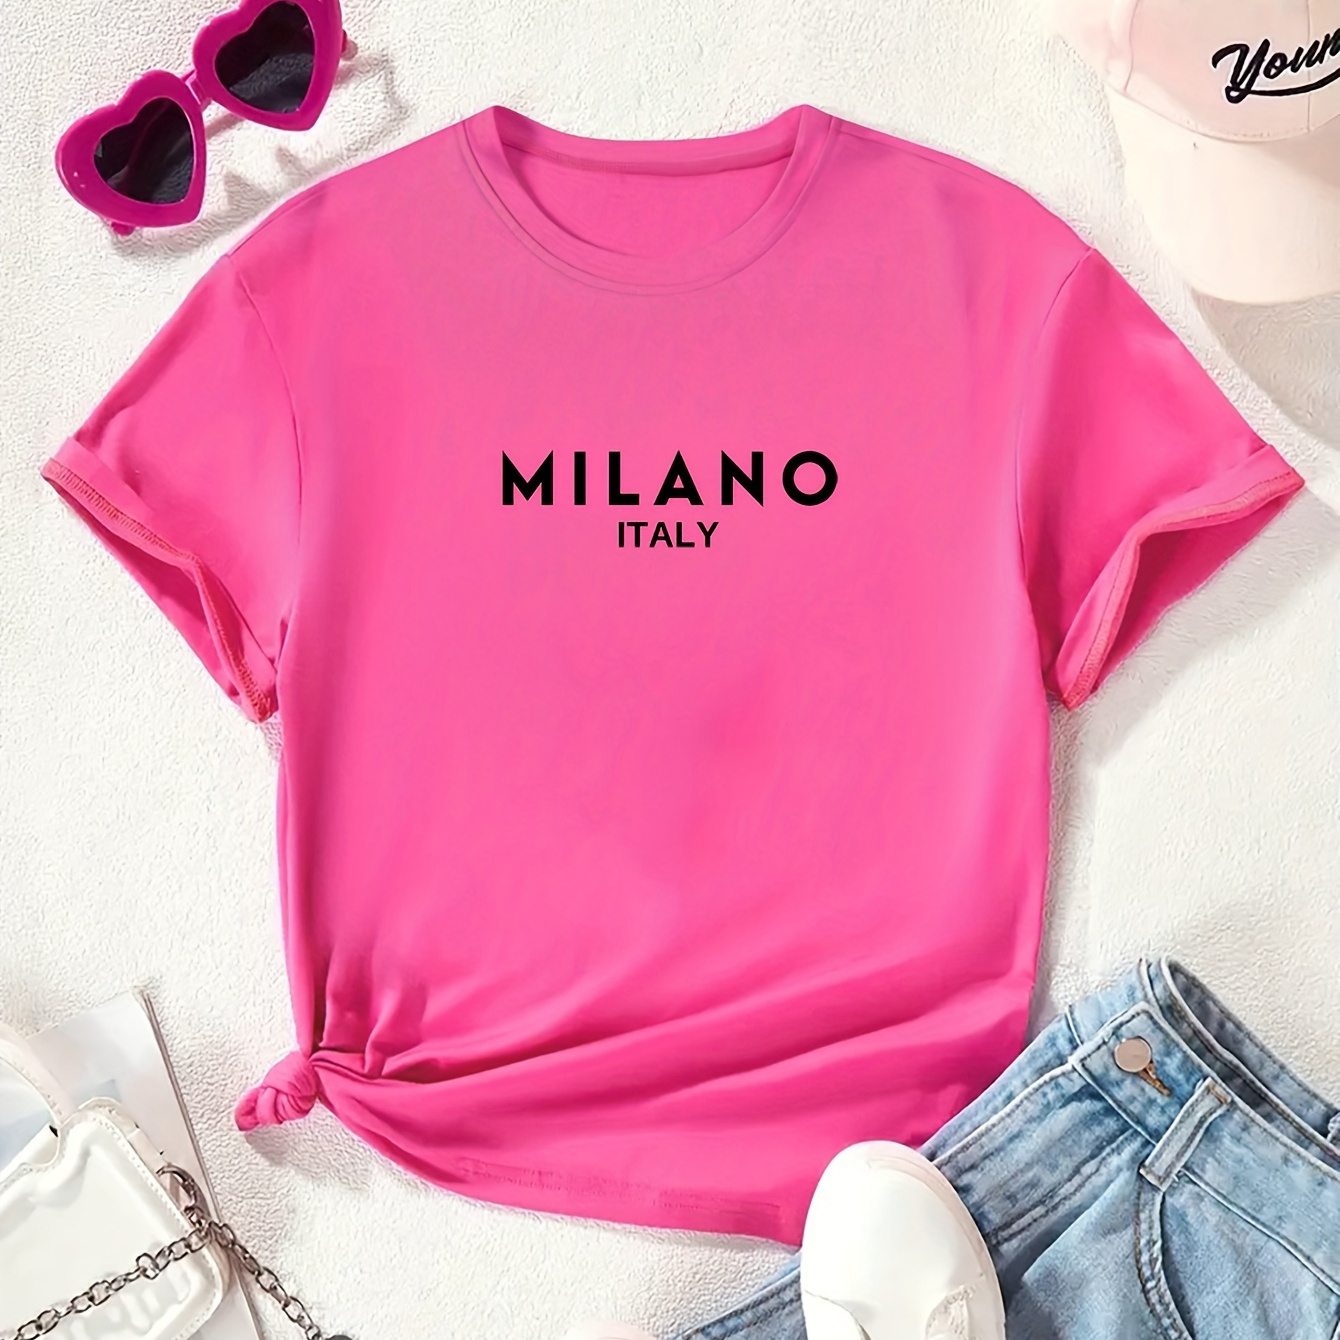 

Milano Italy Print, Tween Girls' Casual & Comfy Crew Neck Short Sleeve Tee For Spring & Summer, Tween Girls' Clothes For Outdoor Activities